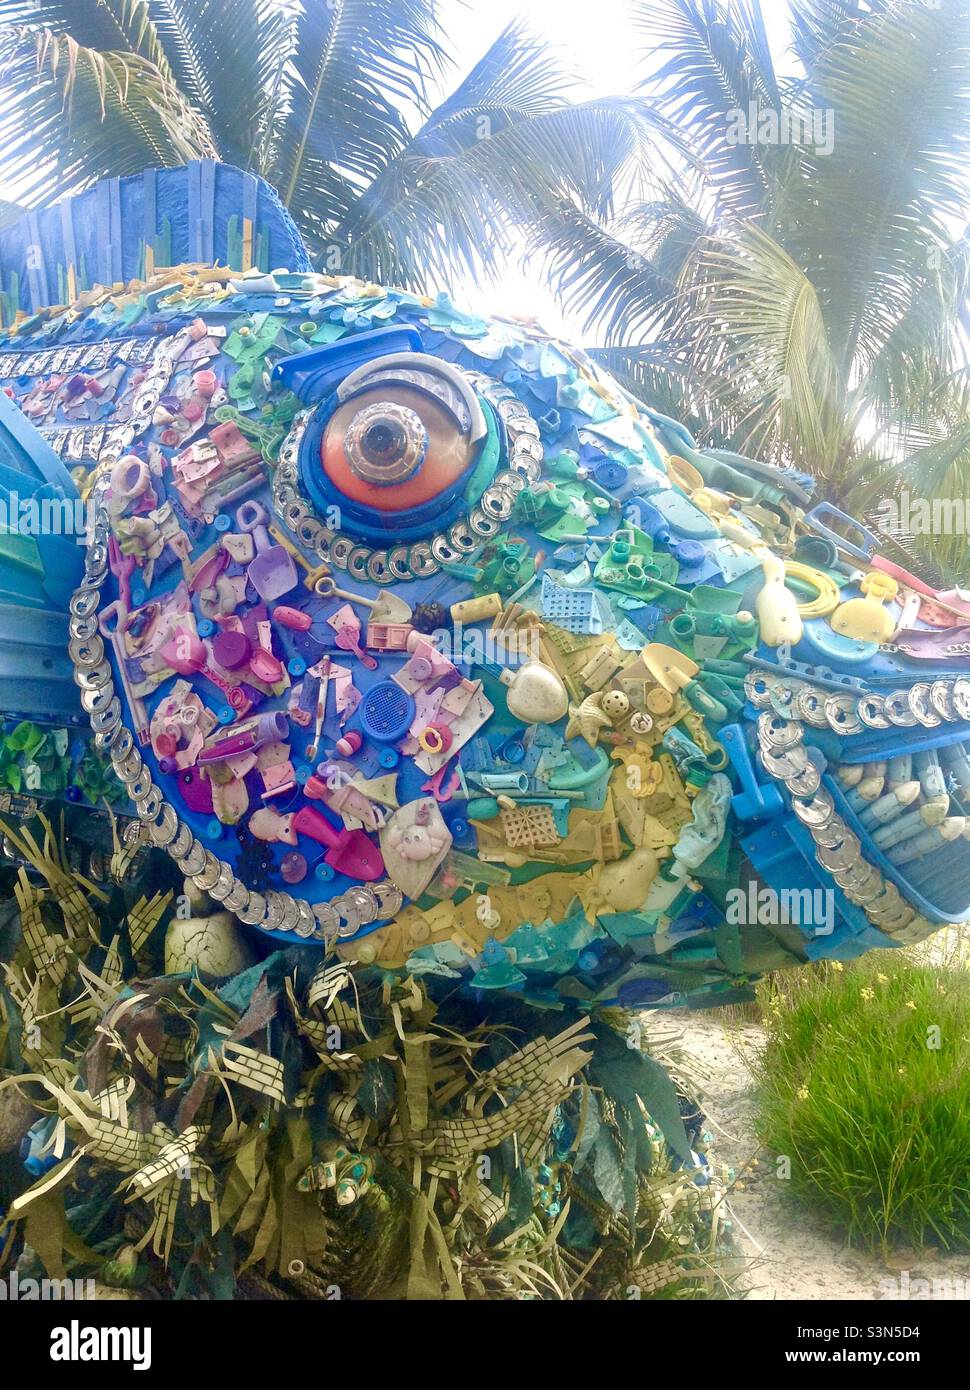 Sculpture de poisson faite de plastiques et de métaux trouvés dans l'océan - conçu par le projet de lavage à terre, exposé à SeaWorld, Floride, États-Unis Banque D'Images